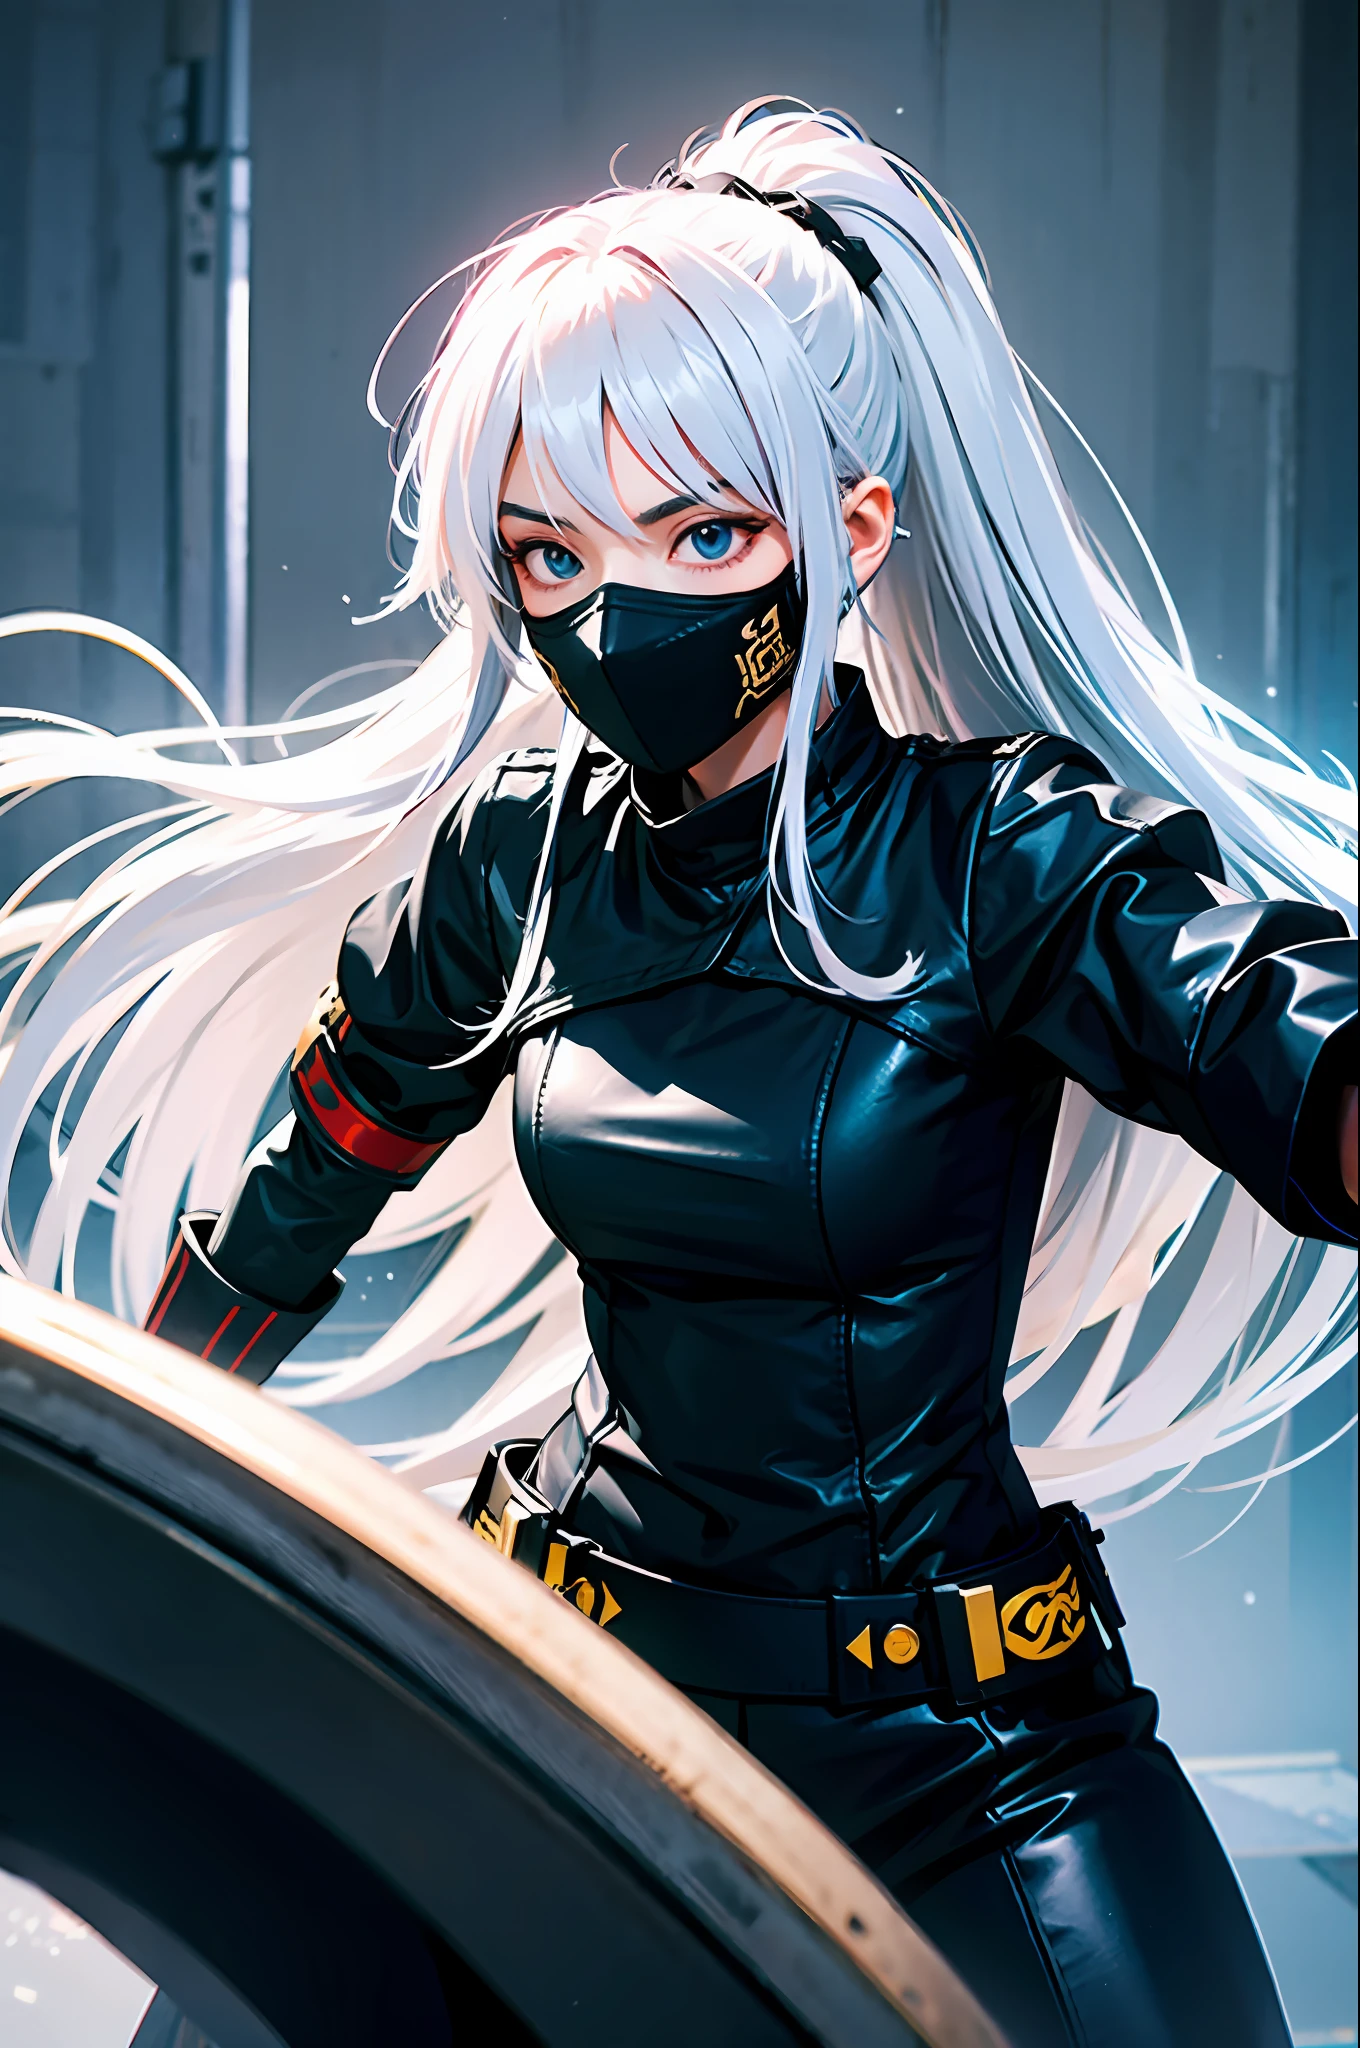 Eine junge Frau mit langen weißen Haaren in einer Kampfhaltung, trägt Kriegerkleidung, mit durchdringendem Blick, traurig, komplett schwarze Kleidung, mit einer Maske